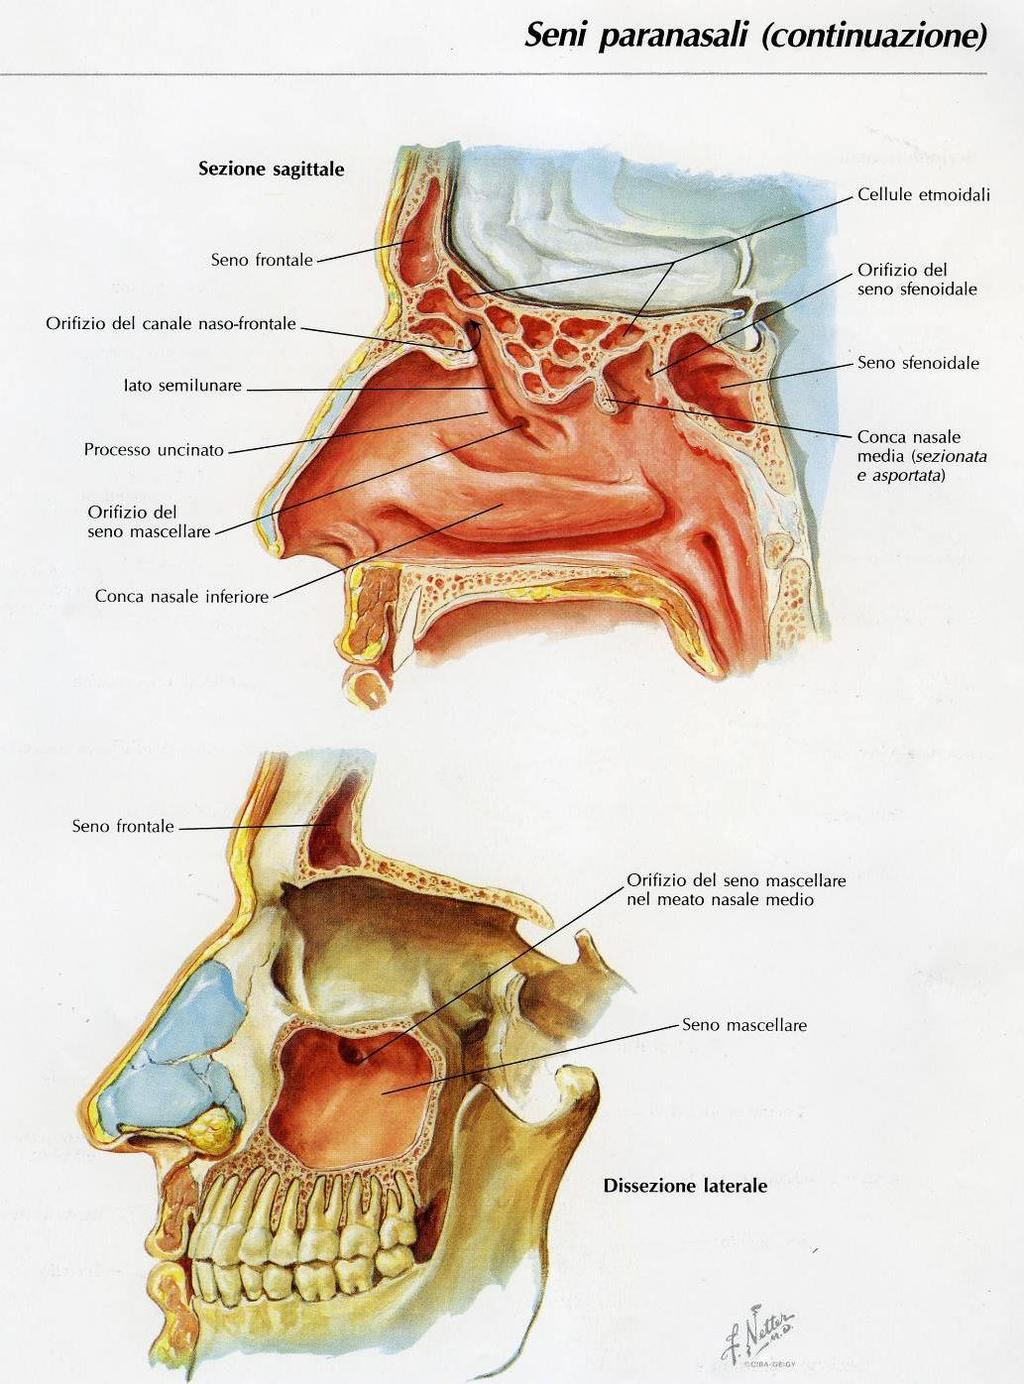 SENI PARANASALI Piccole cavità scavate nelle ossa pneumatiche ripiene di aria che comunicano con le cavità nasali